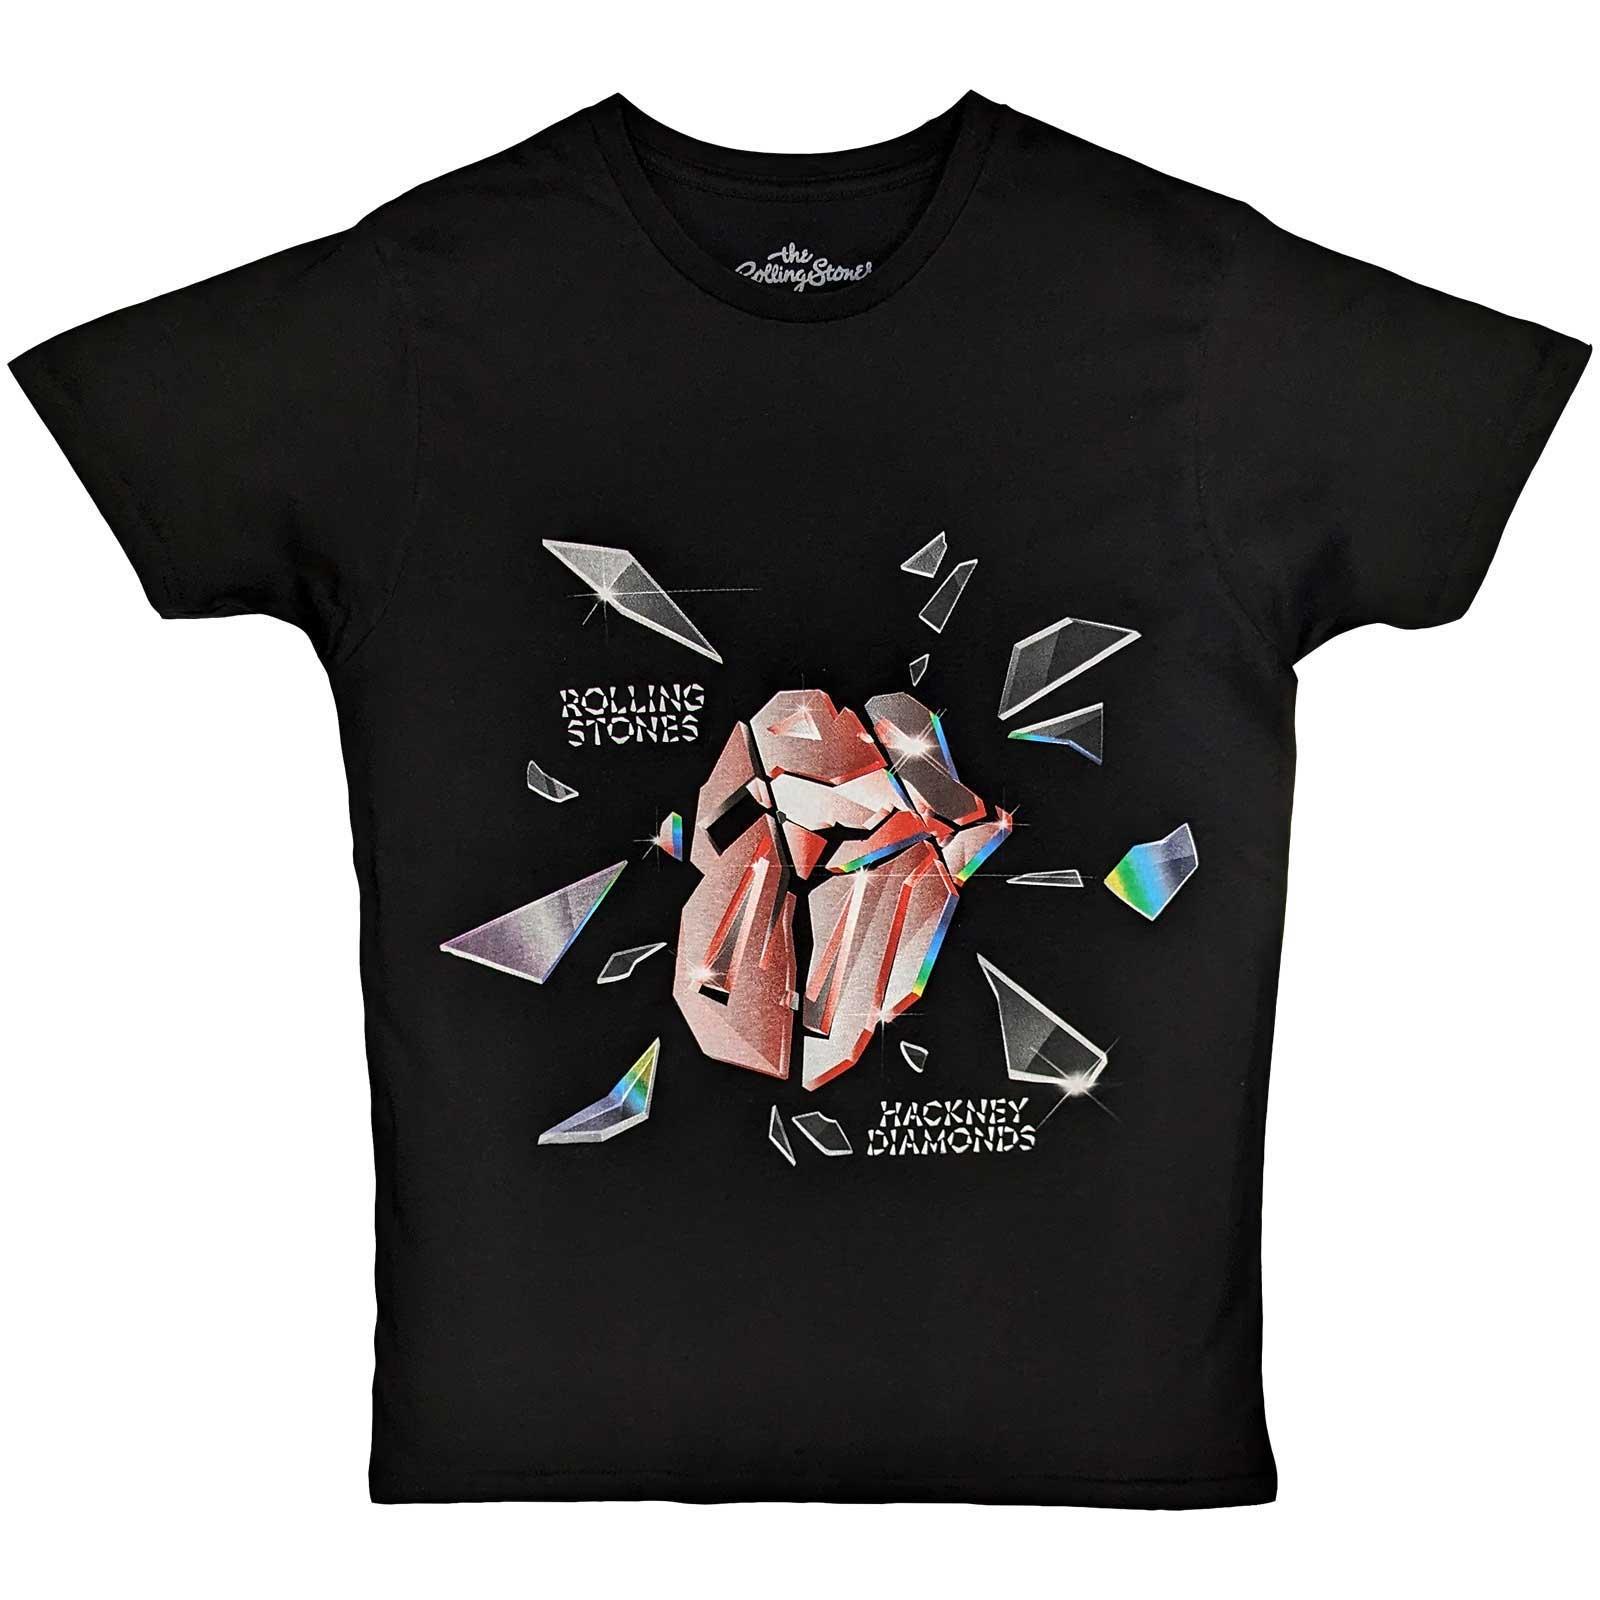 (ローリング・ストーンズ) The Rolling Stones オフィシャル商品 ユニセックス Hackney Diamonds Tシャツ Explosion 半袖 トップス 